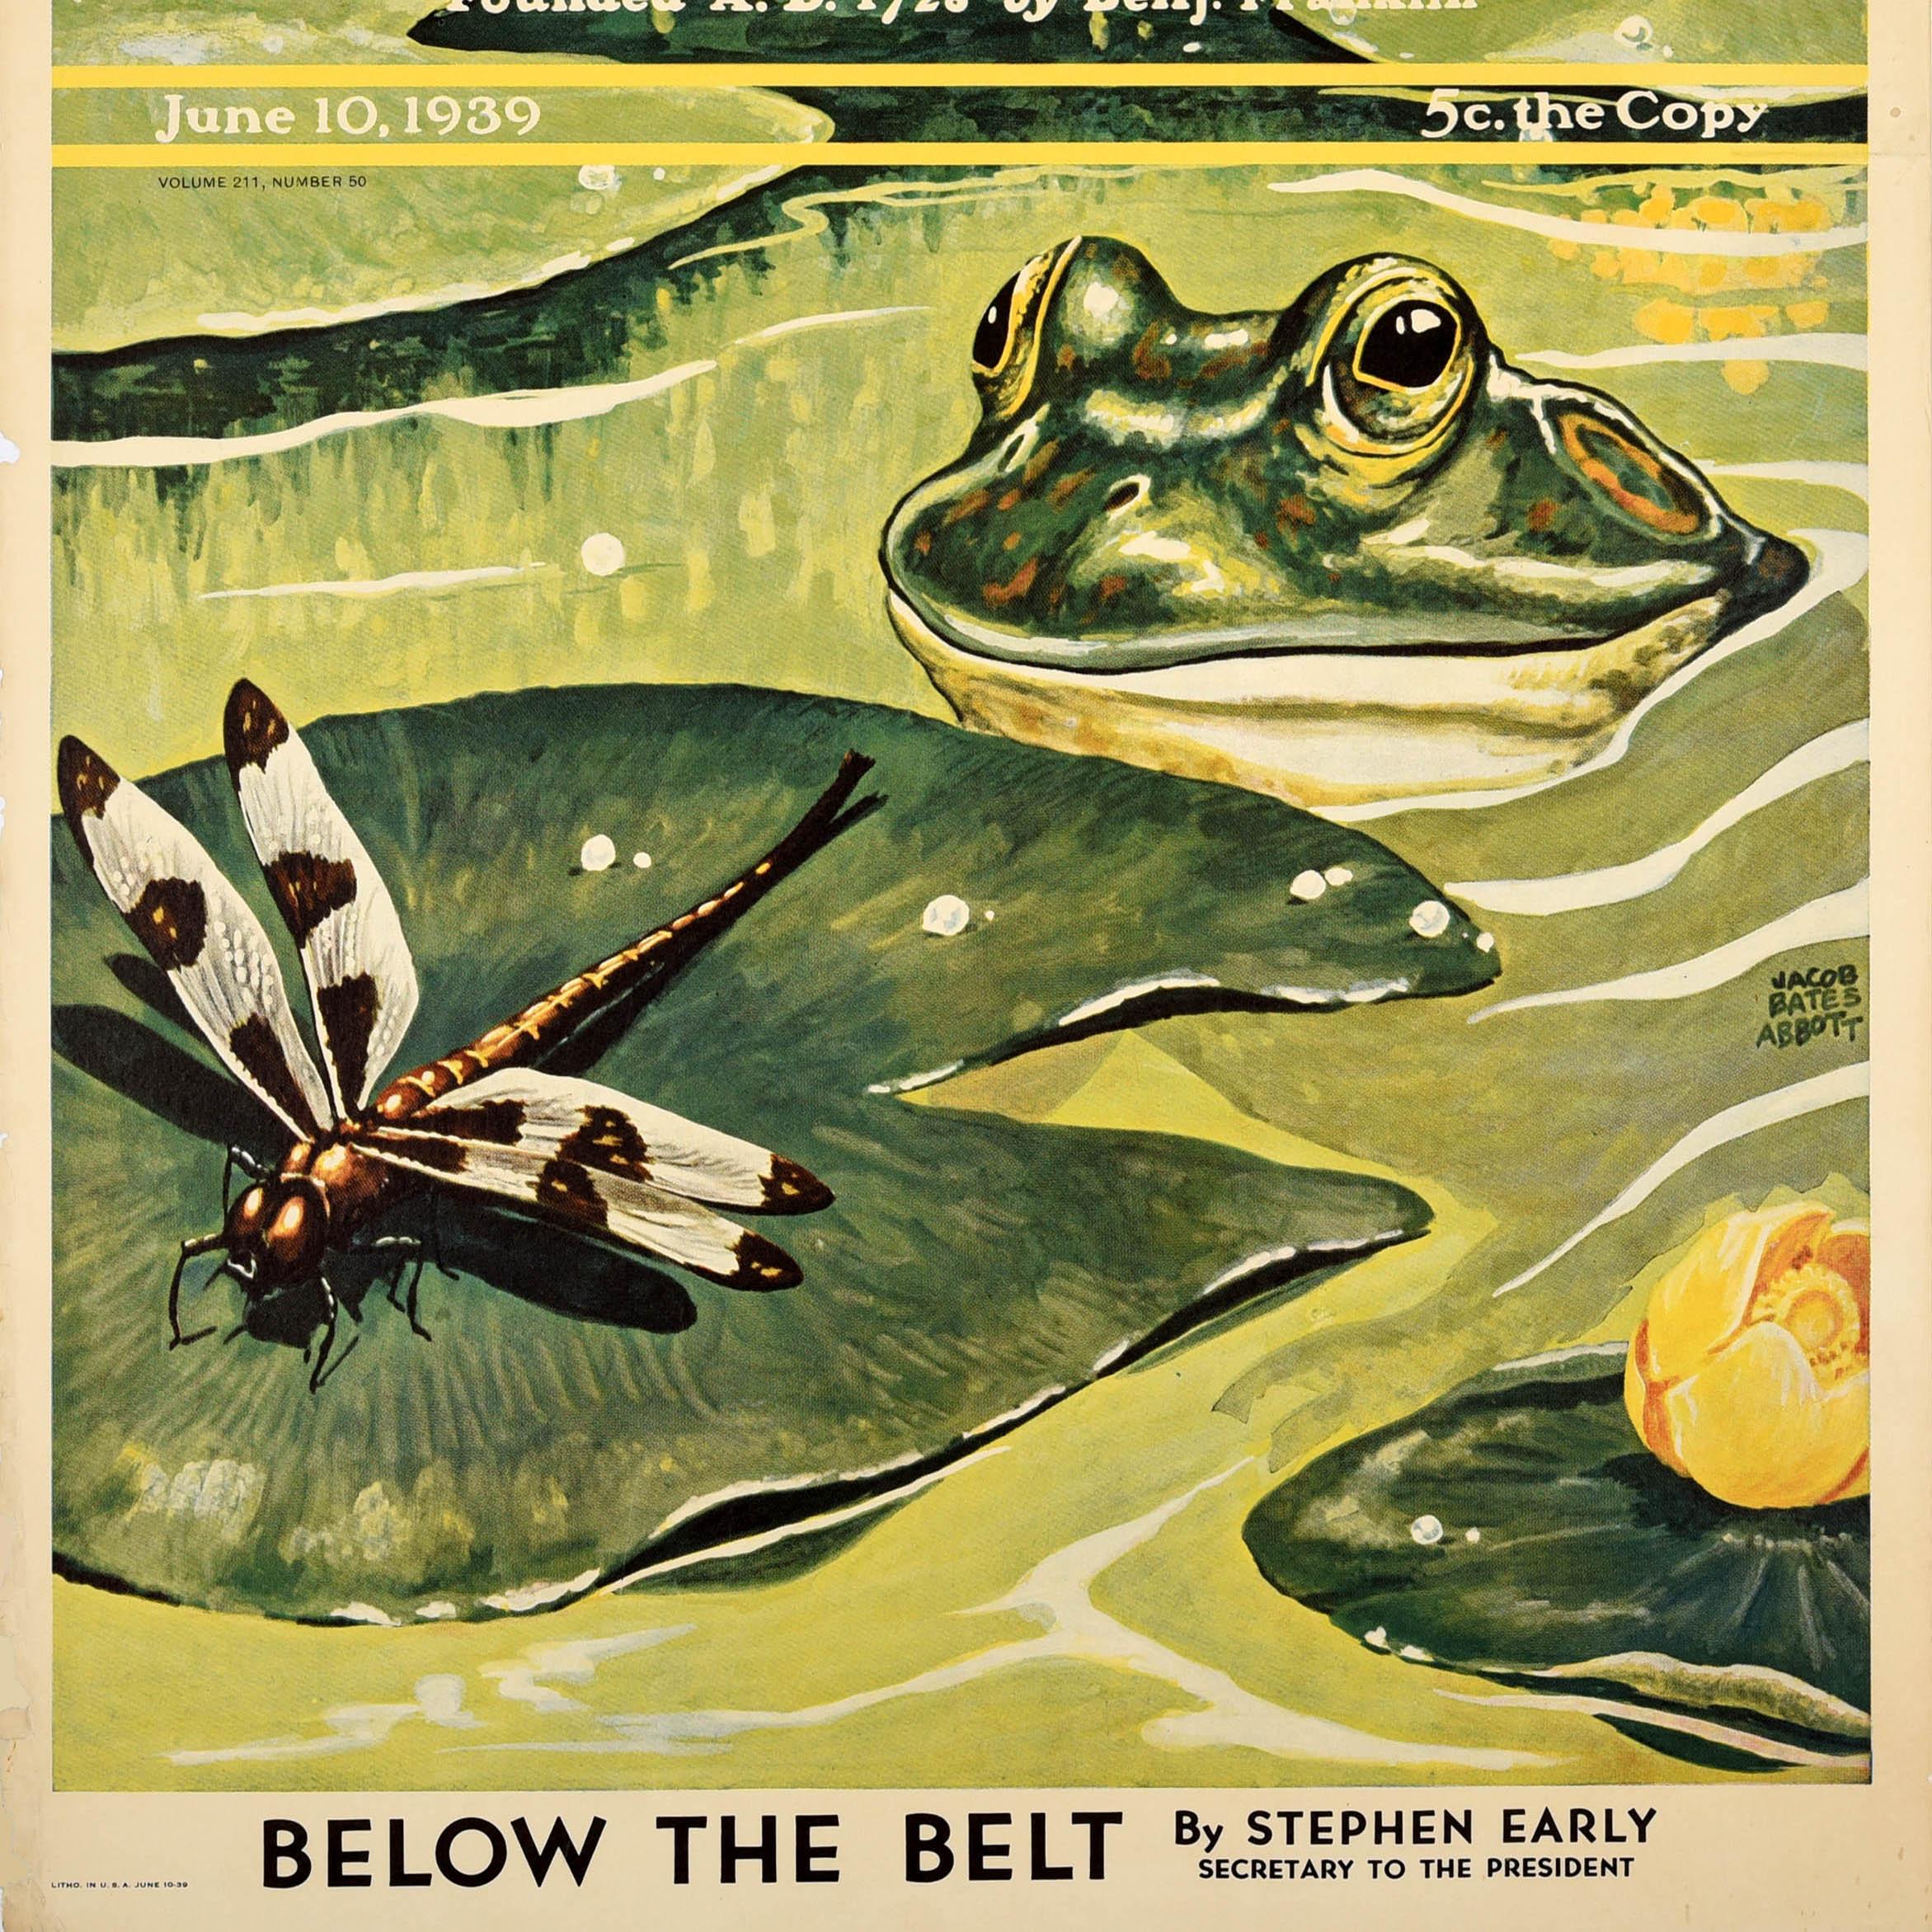 Original Vintage-Werbeplakat für das Magazin The Saturday Evening Post, Ausgabe 10. Juni 1939, mit einem Tiermotiv des Aquarellmalers Jacob Bates Abbott (1895-1950), das einen Frosch zeigt, der in einem Teich schwimmt und eine Libelle auf einem